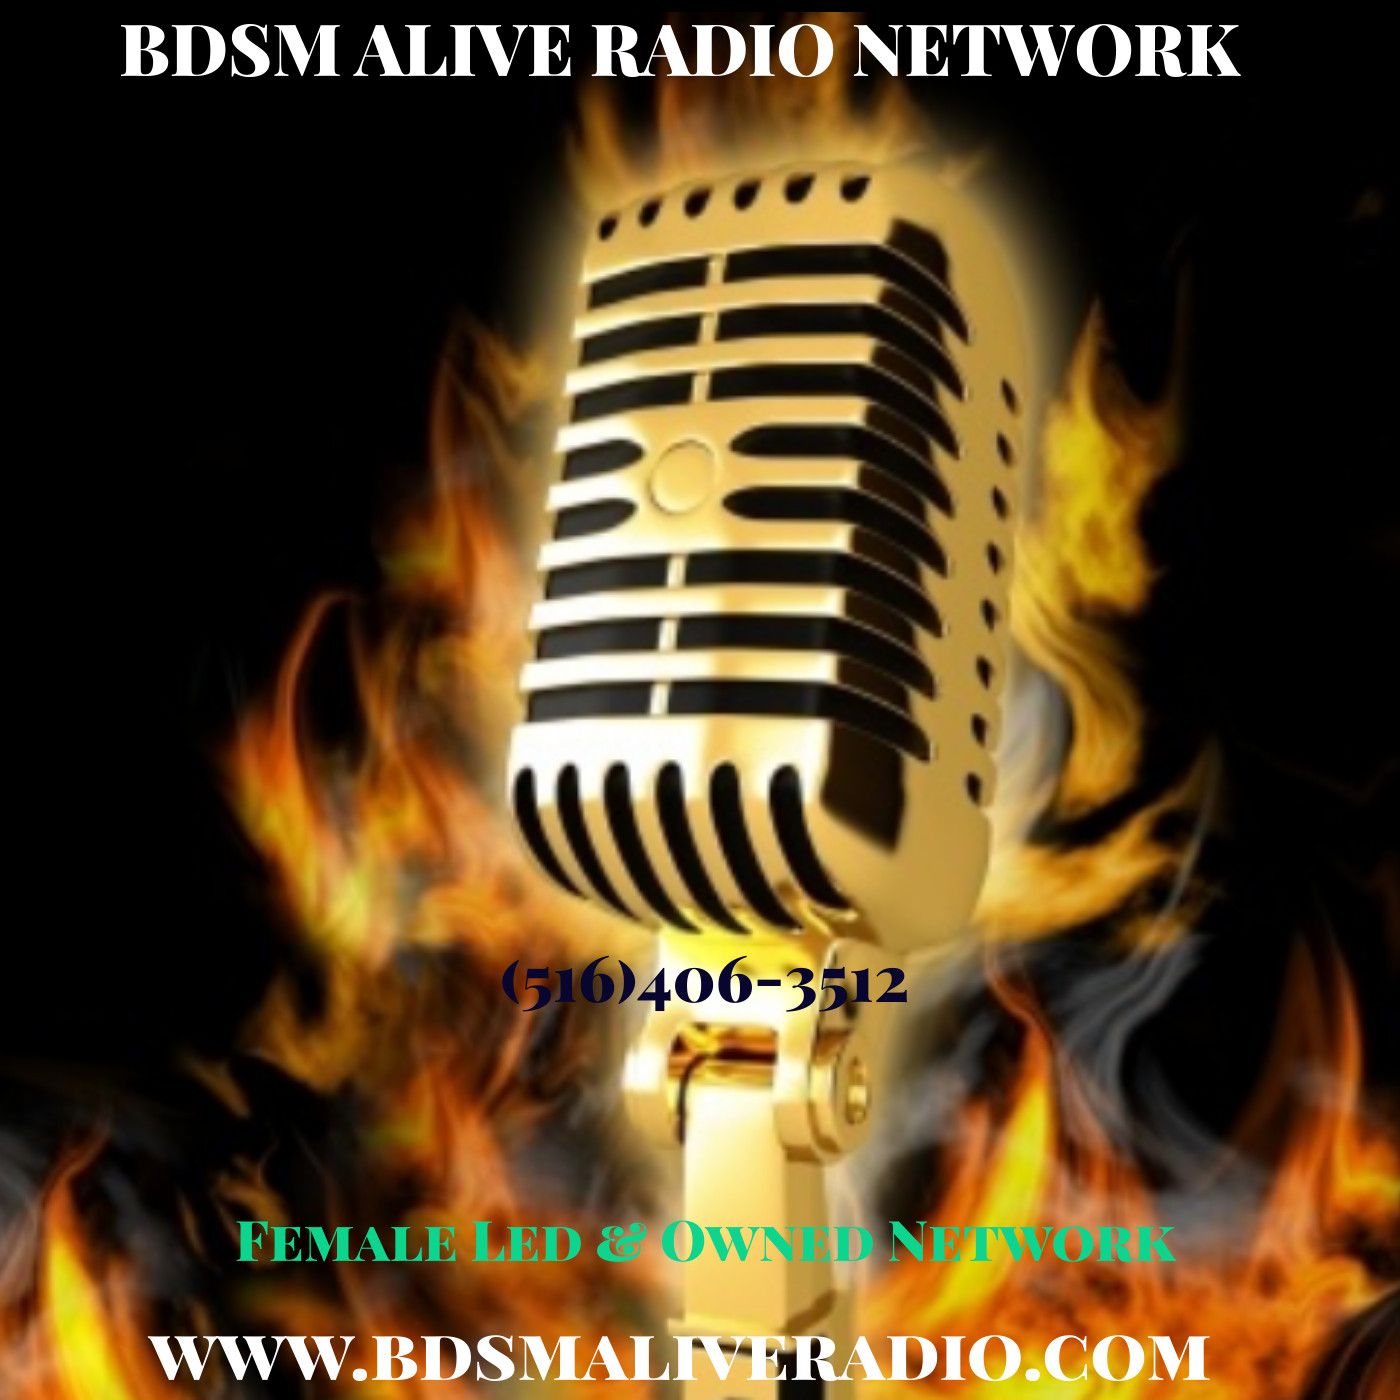 03/15/2022 BDSM ALIVE RADIO Network Episode #11 Mistress Discusses Narcissism in relationships